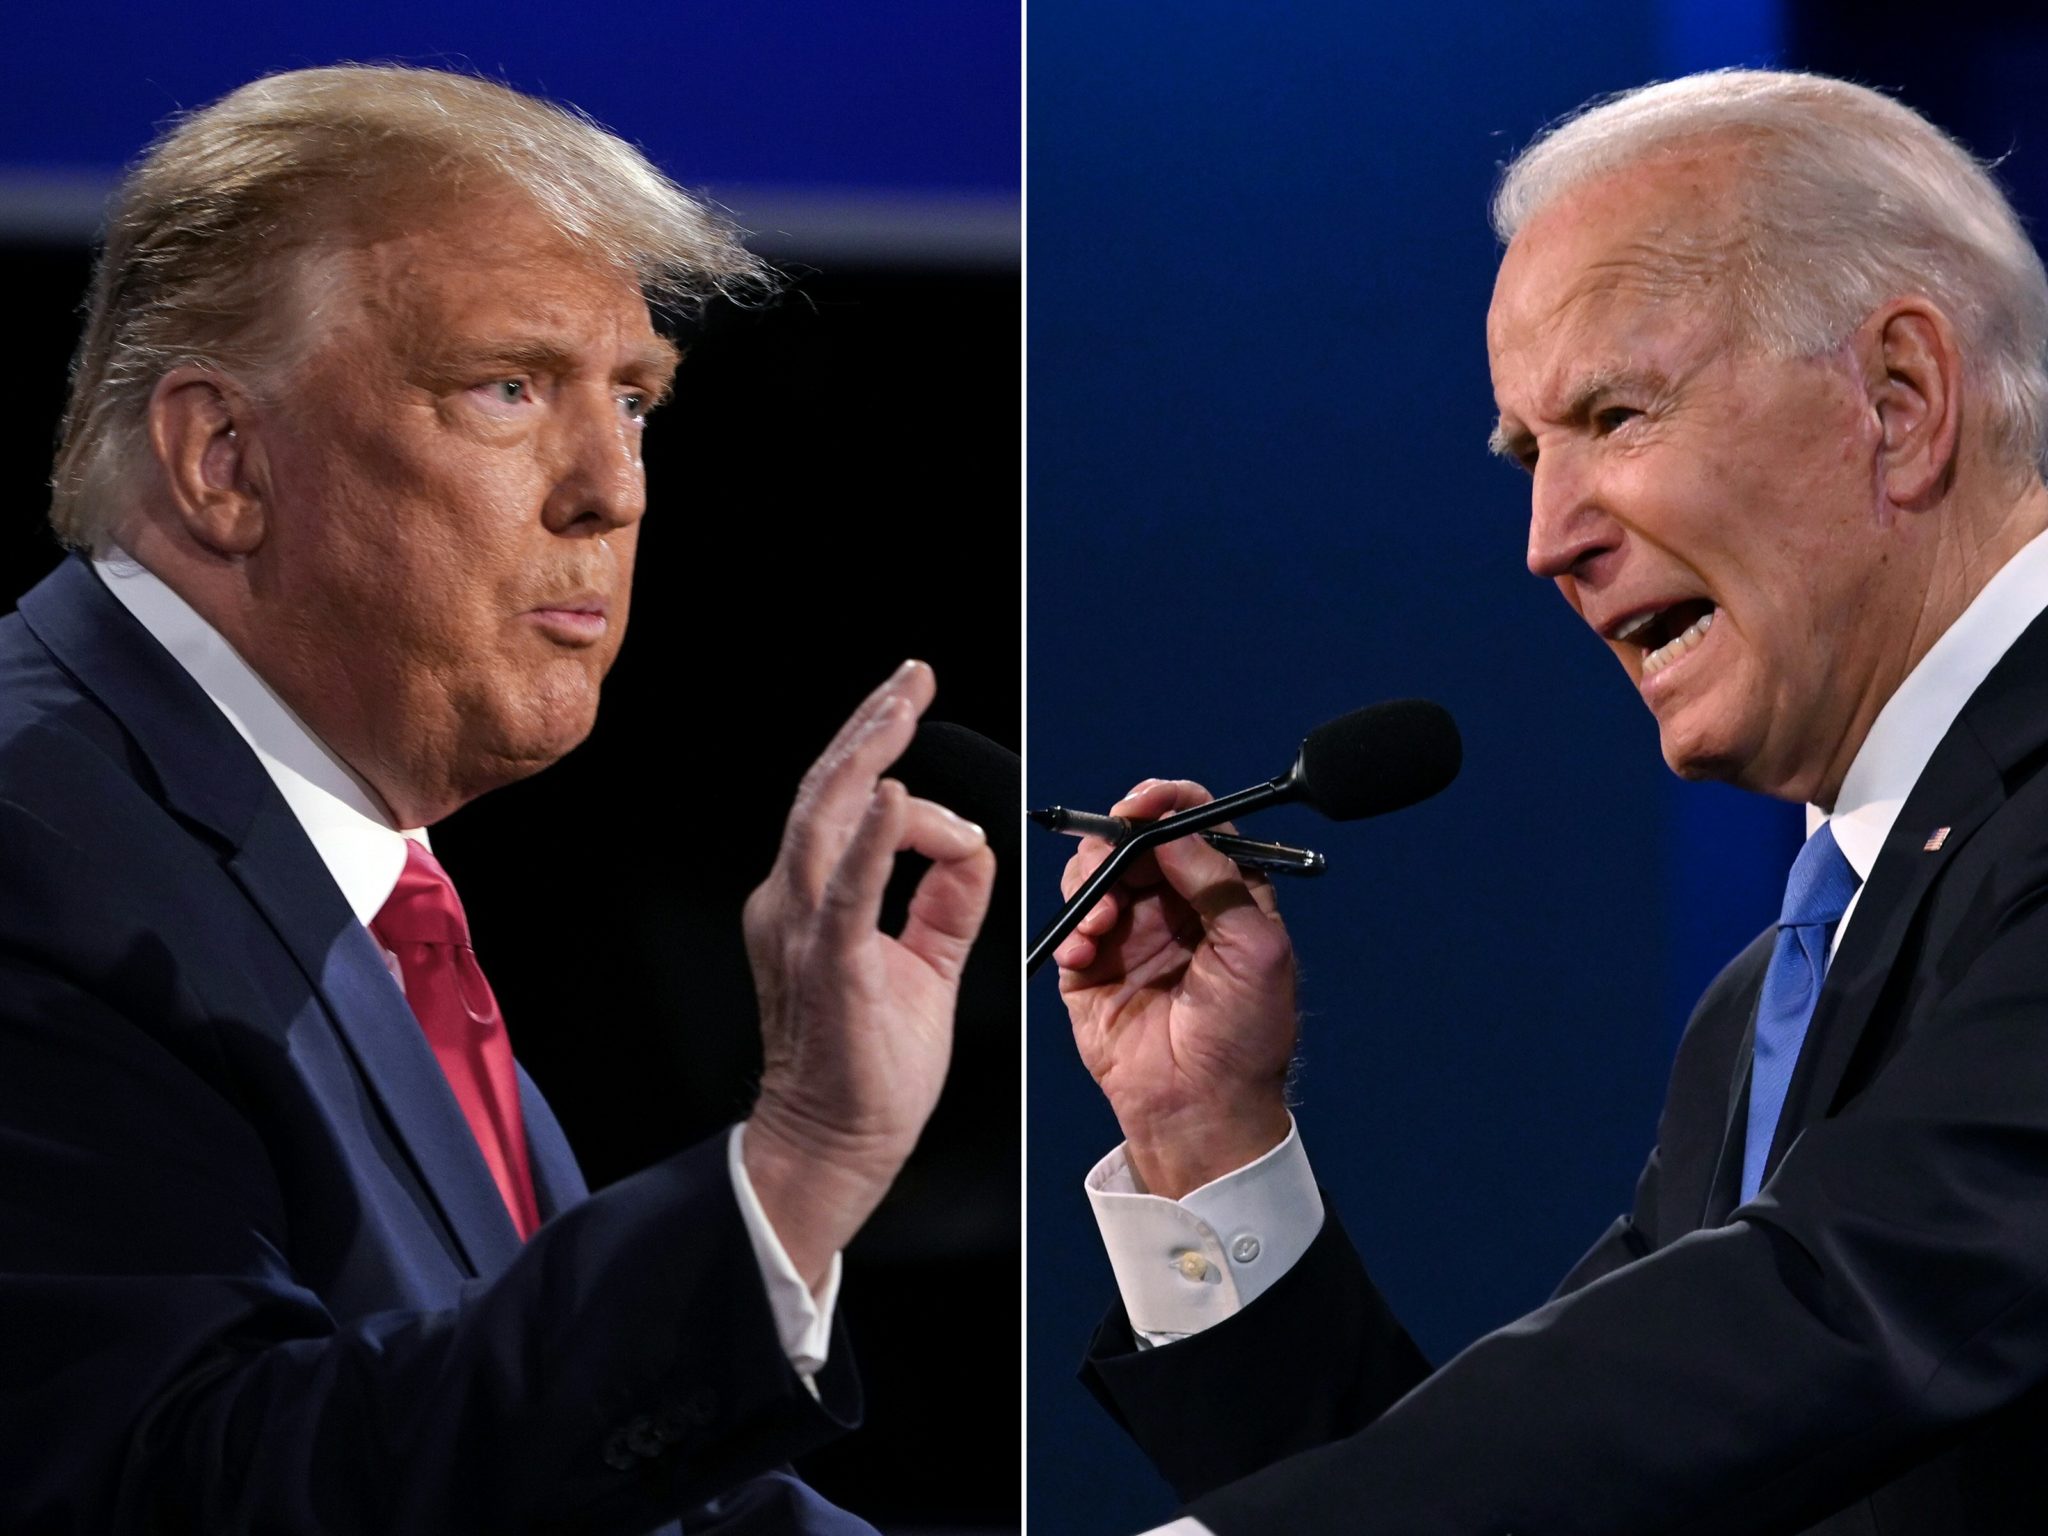 Los votantes LGBT+ favorecieron abrumadoramente a Joe Biden por encima de Donald Trump, según las encuestas a pie de urna.